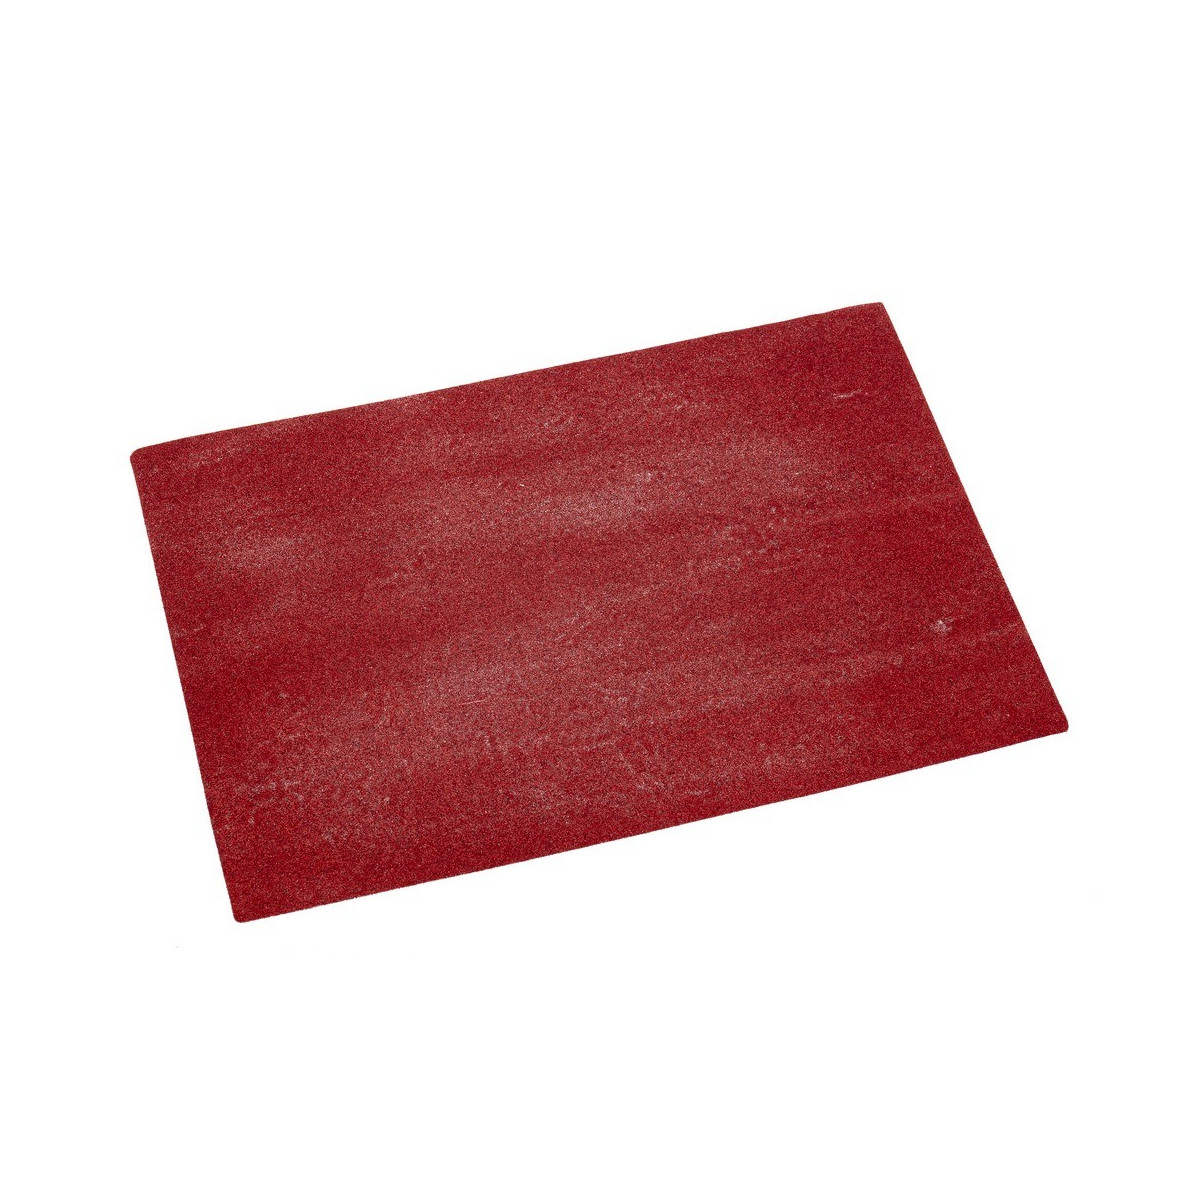 Base para tripé vermelha 40 x 27 50 cm